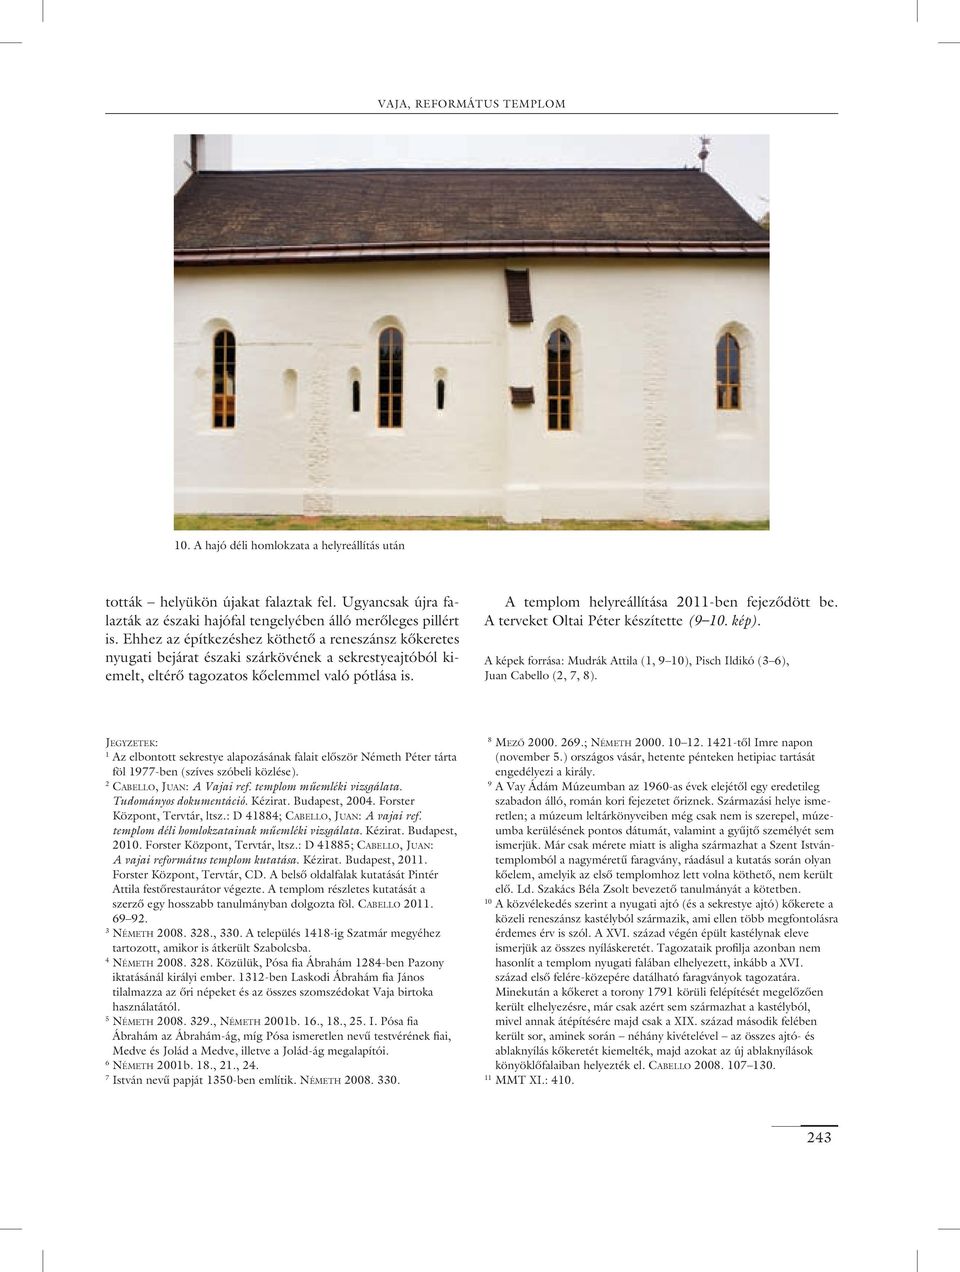 A templom helyreállítása 2011-ben fejezôdött be. A terveket Oltai Péter készítette (9 10. kép). A képek forrása: Mudrák Attila (1, 9 10), Pisch Ildikó (3 6), Juan Cabello (2, 7, 8).